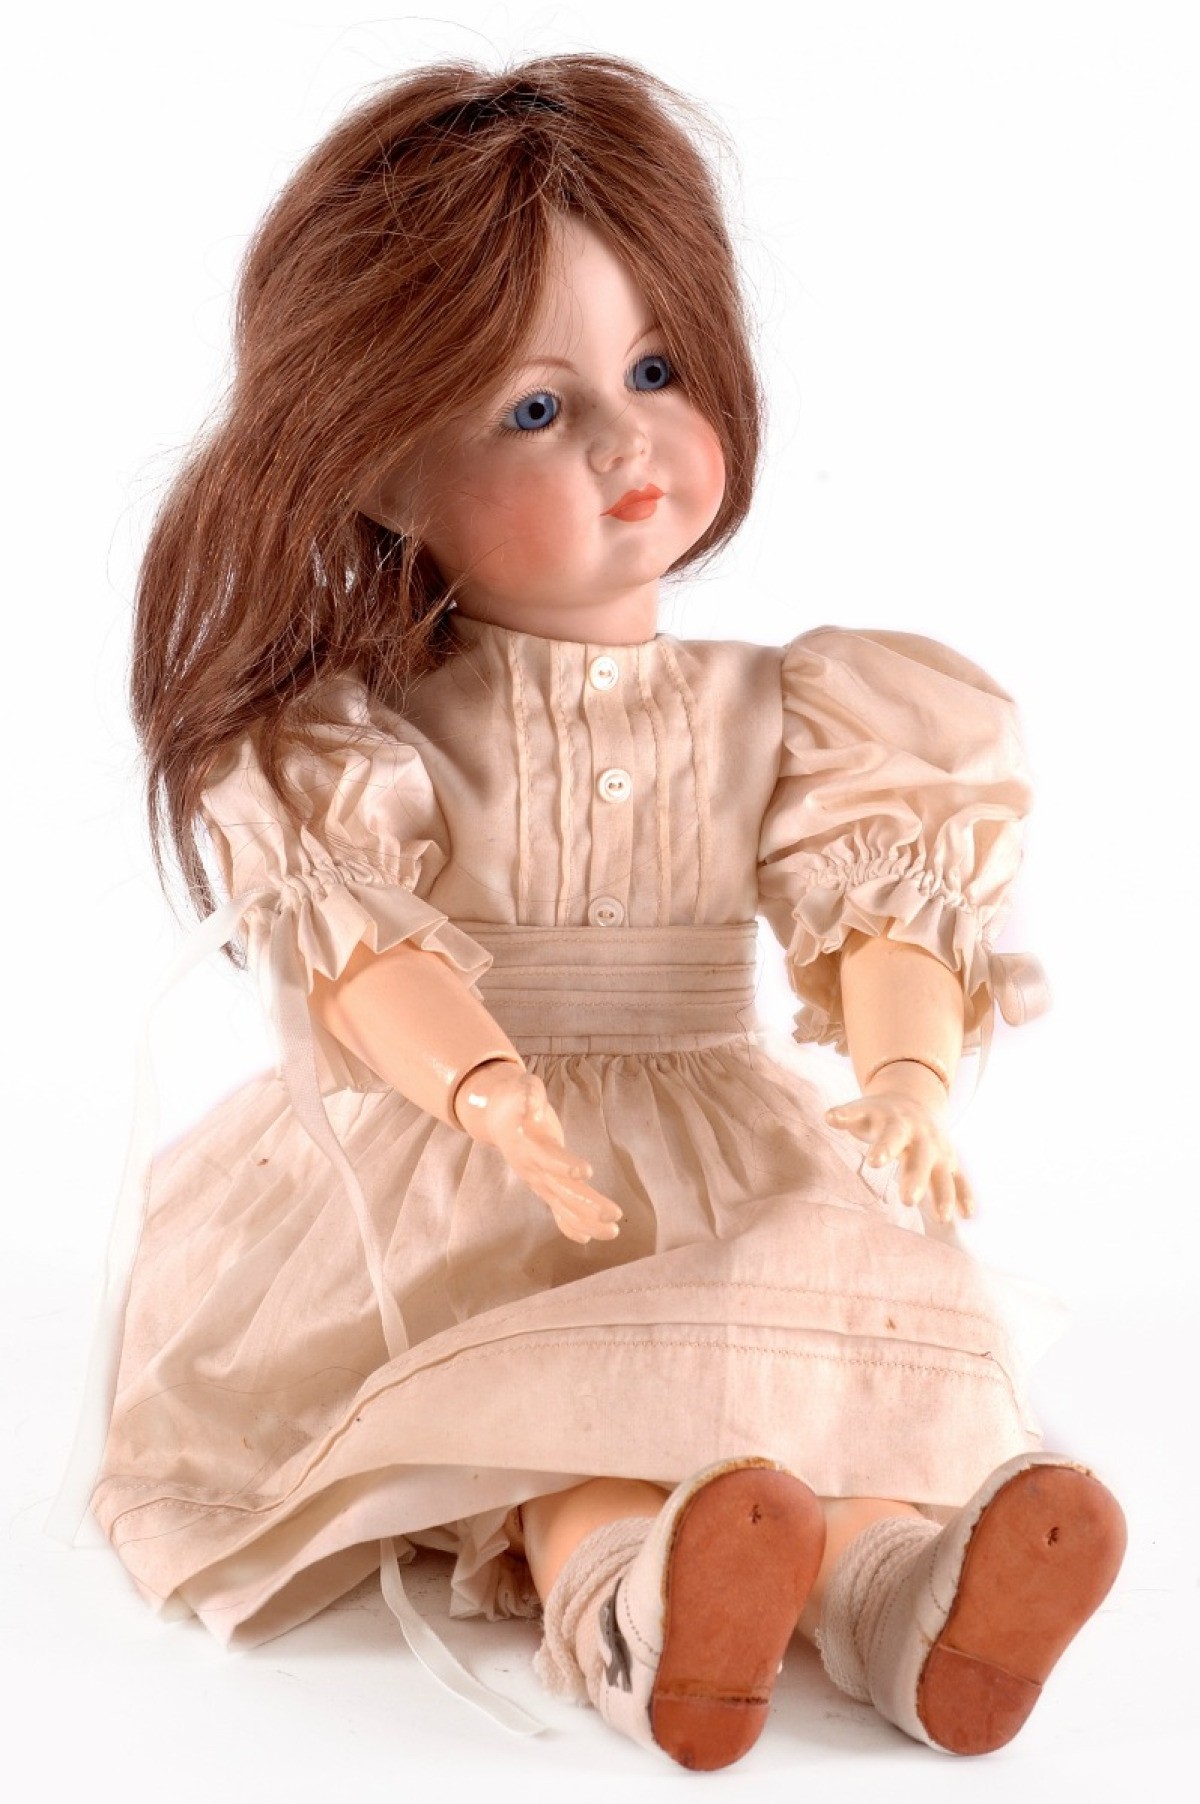 vintage doll dress